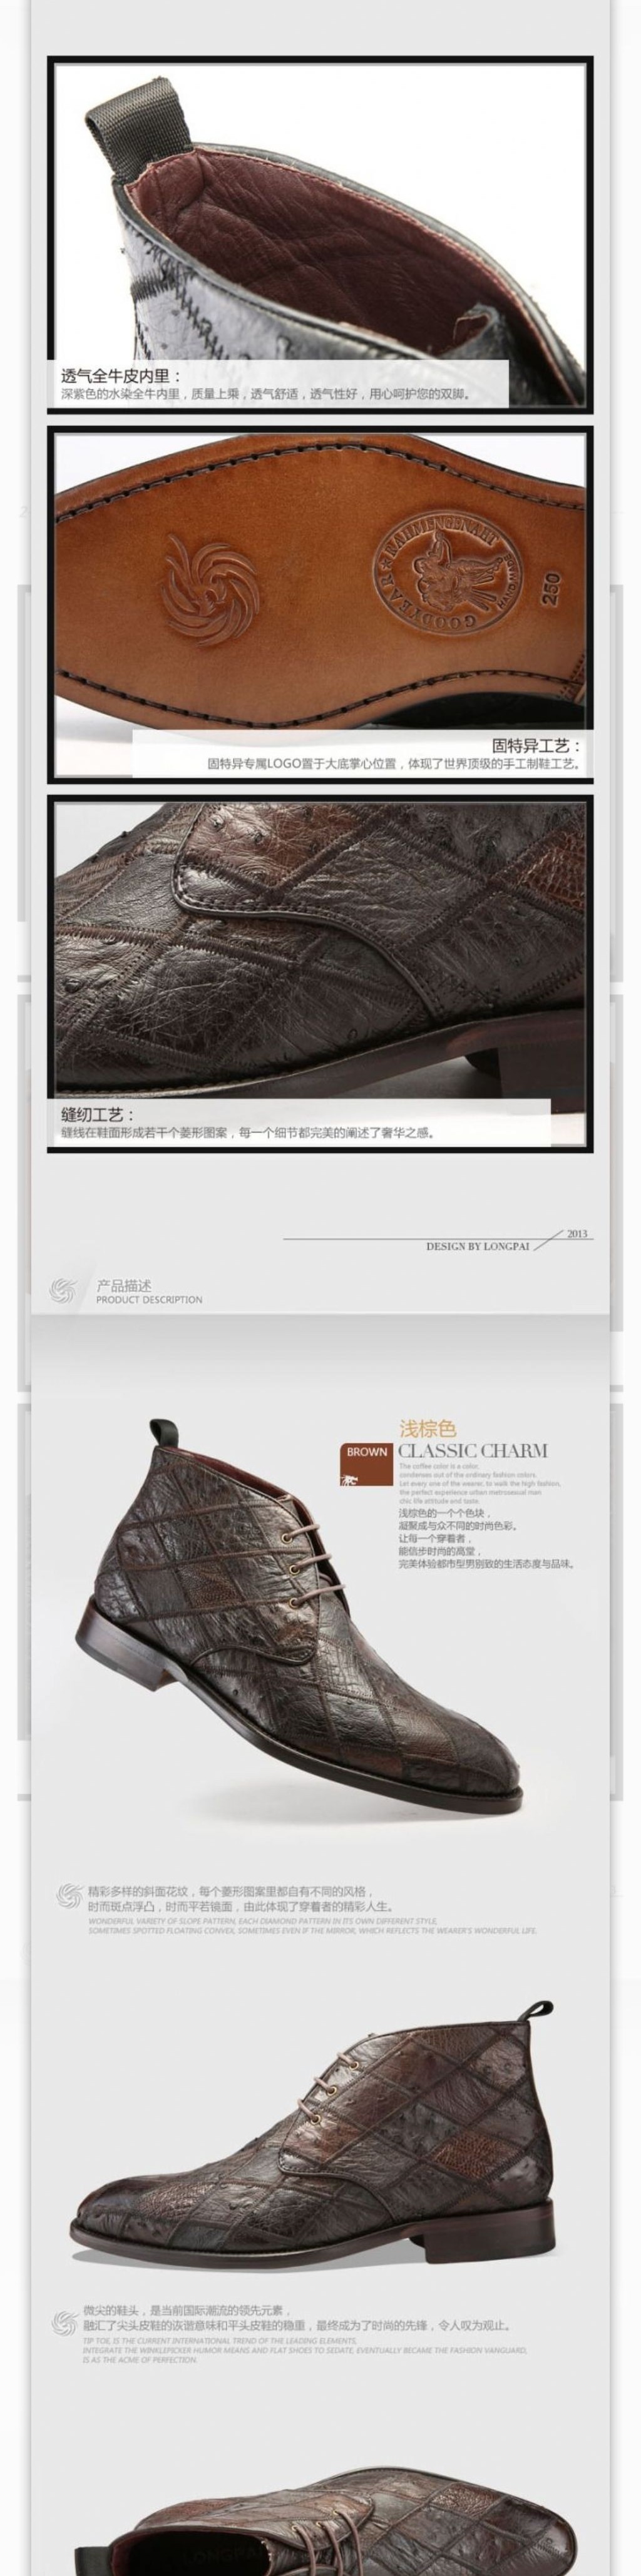 淘宝素材PSD高清分层描述模板男鞋模板